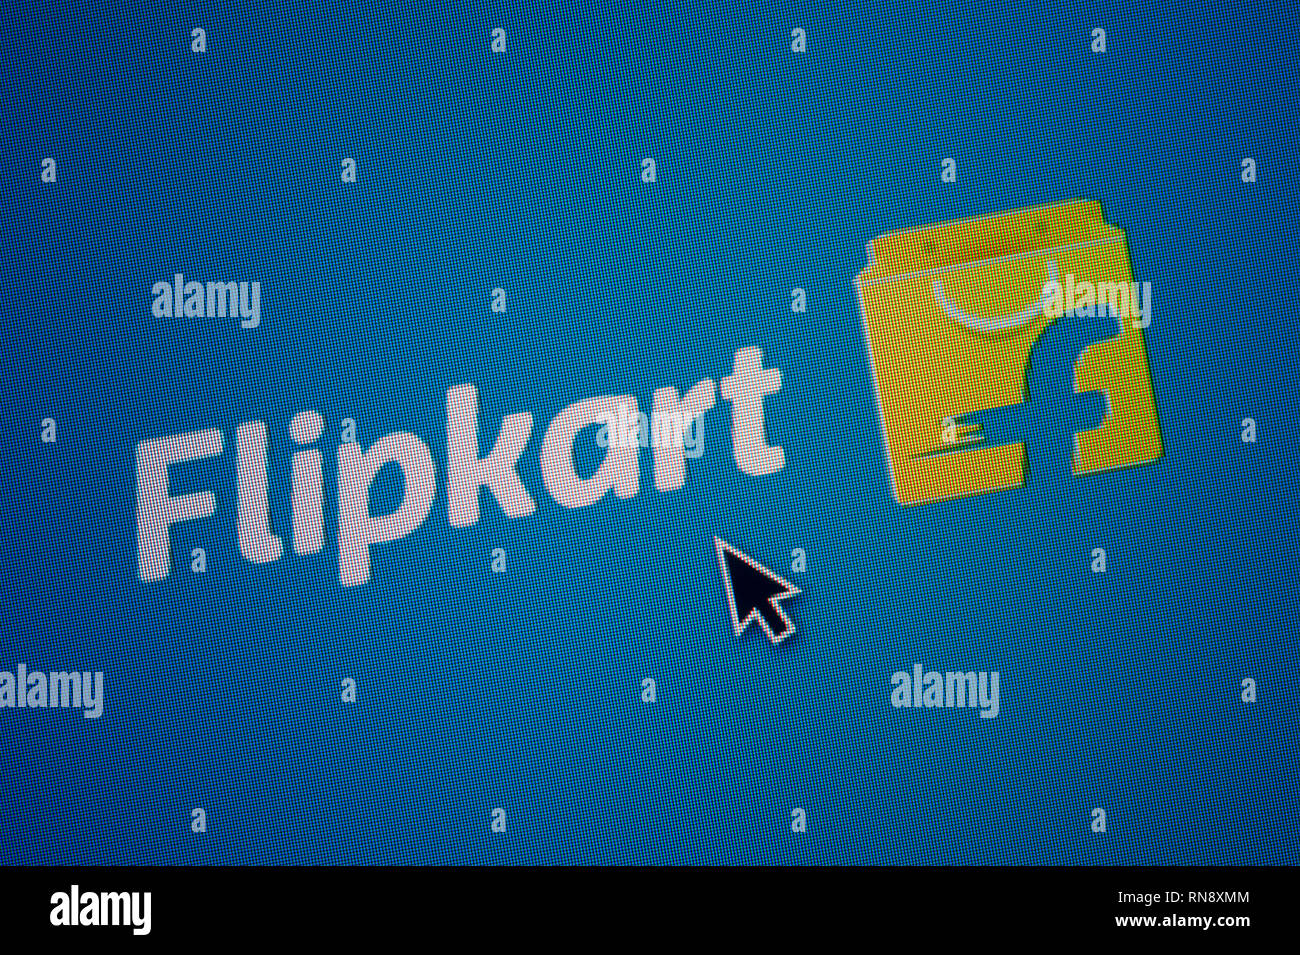 Das Logo von Flipkart ist auf einem Bildschirm gesehen zusammen mit einer Maus Cursor (nur redaktionelle Nutzung) Stockfoto